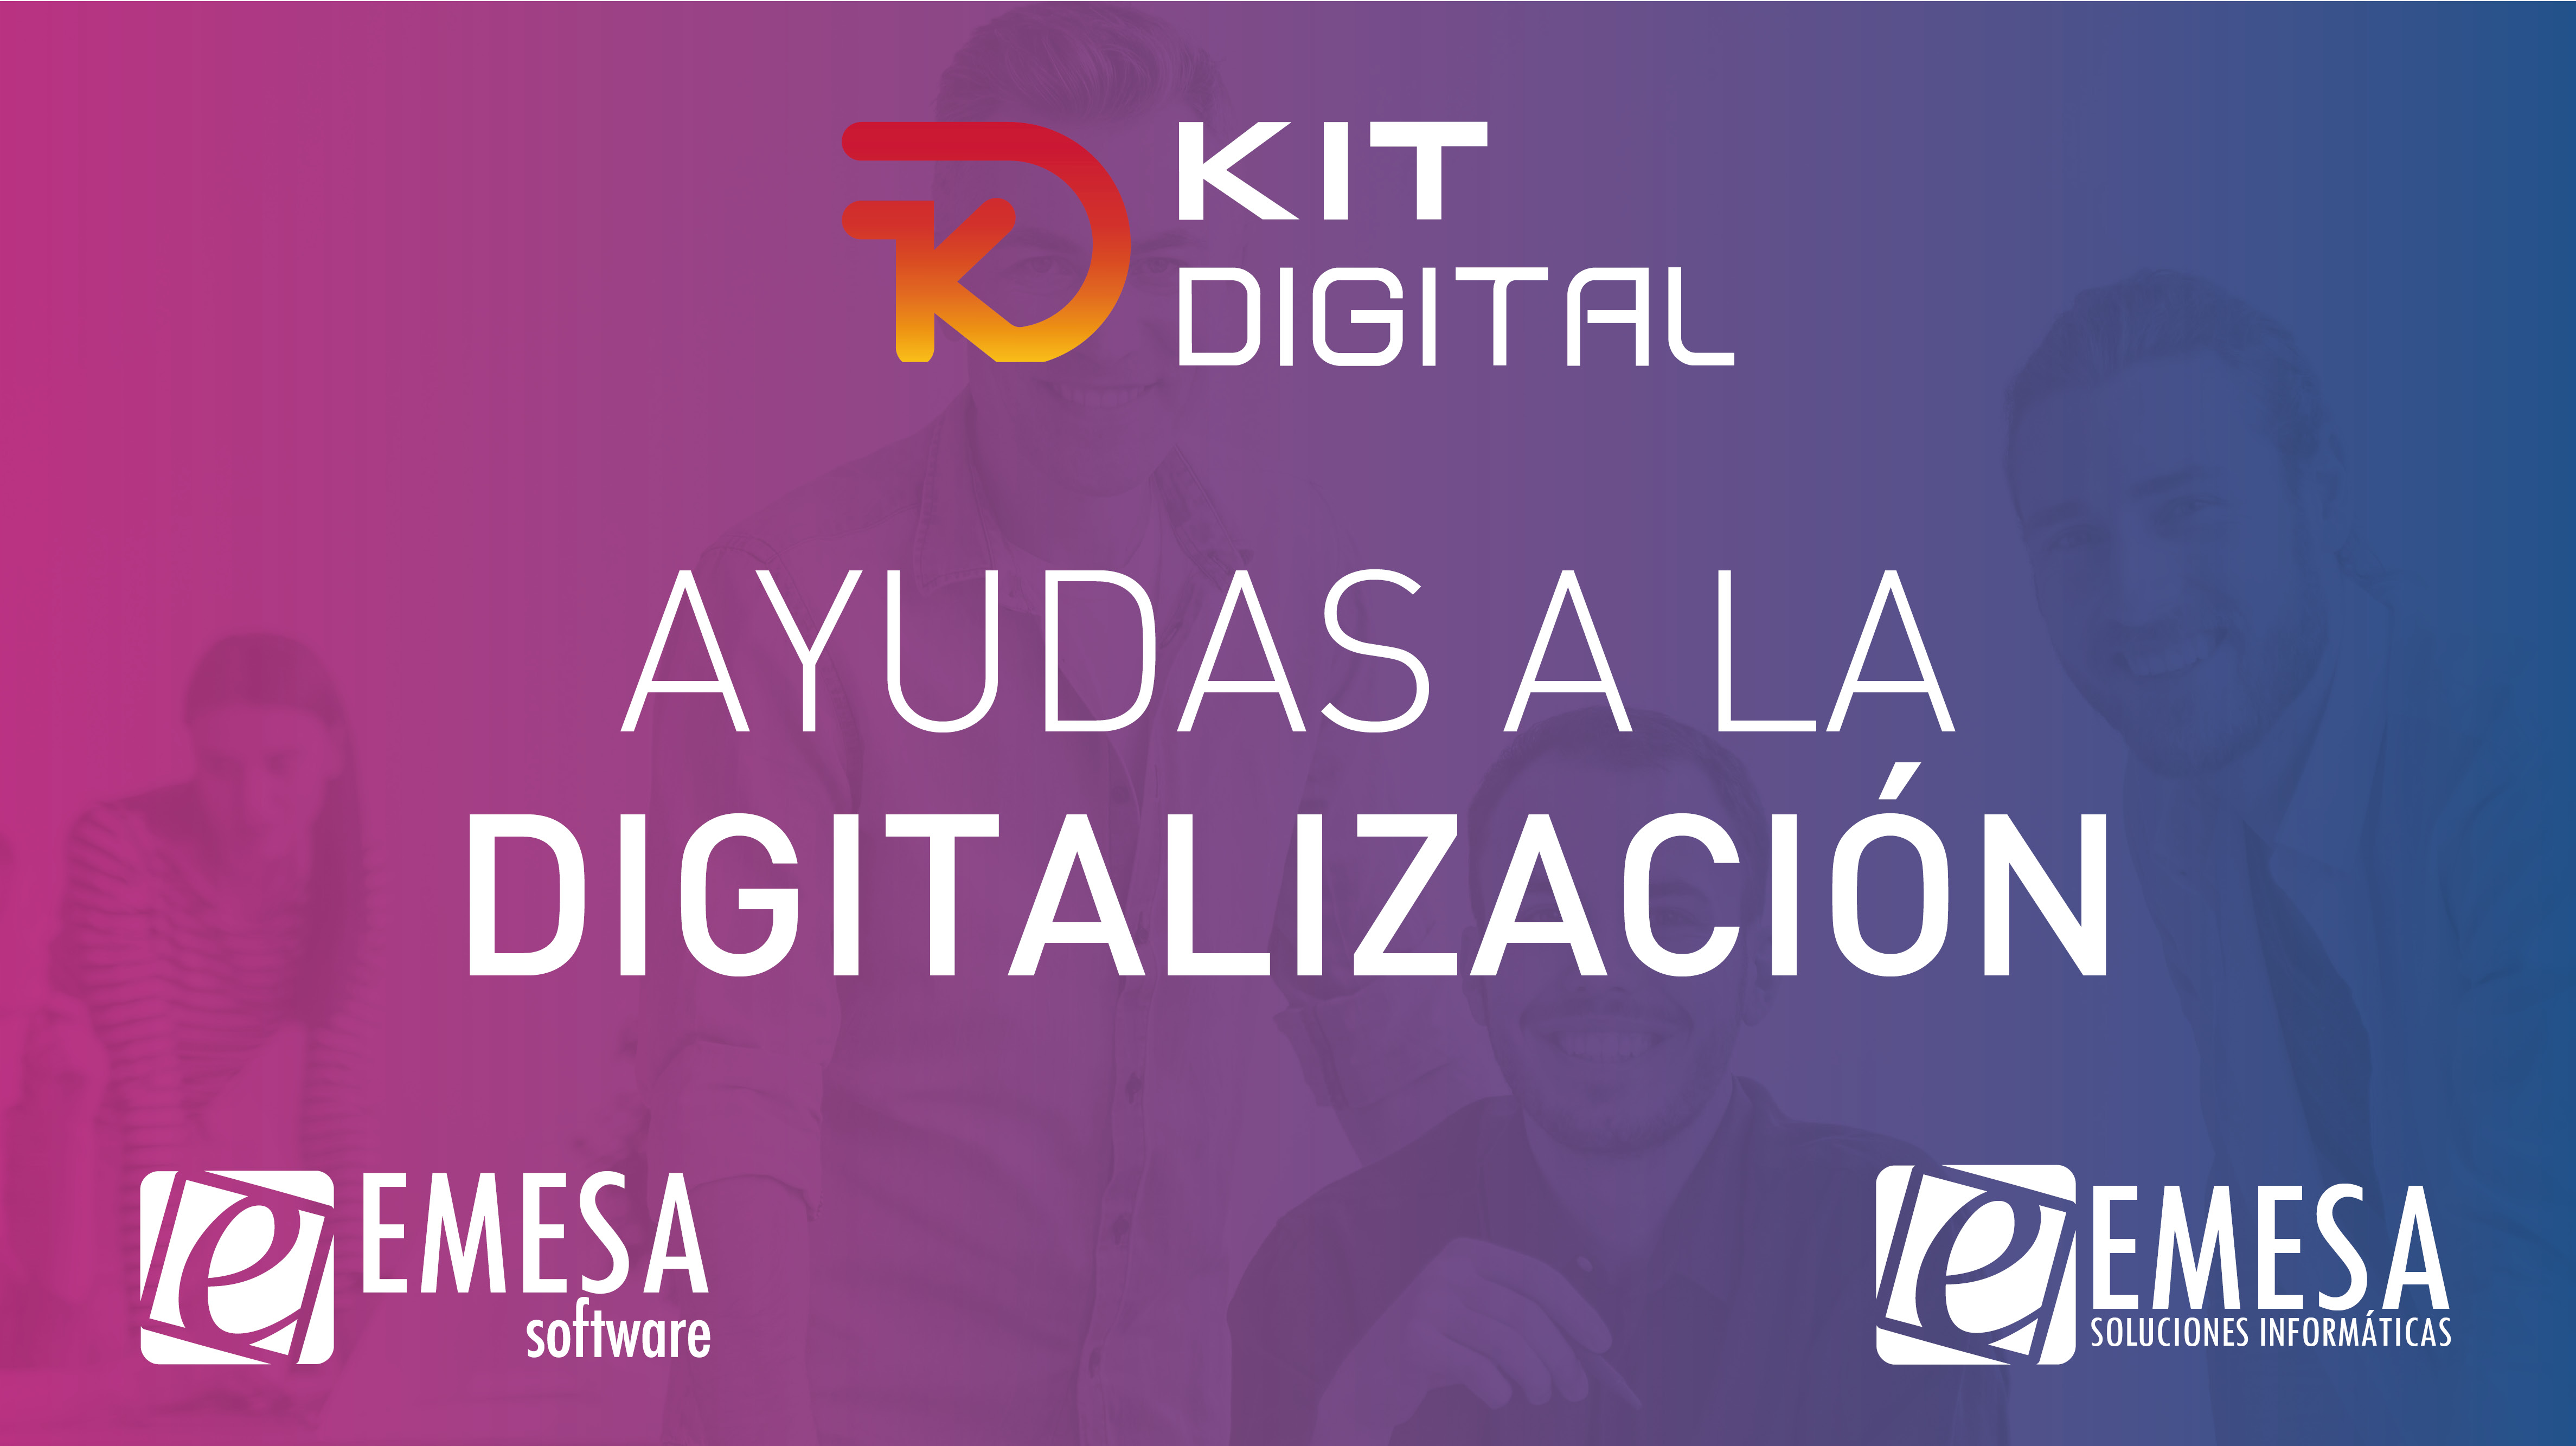 Kit Digital - Ayudas para empresas entre 3 y 9 empleados - 